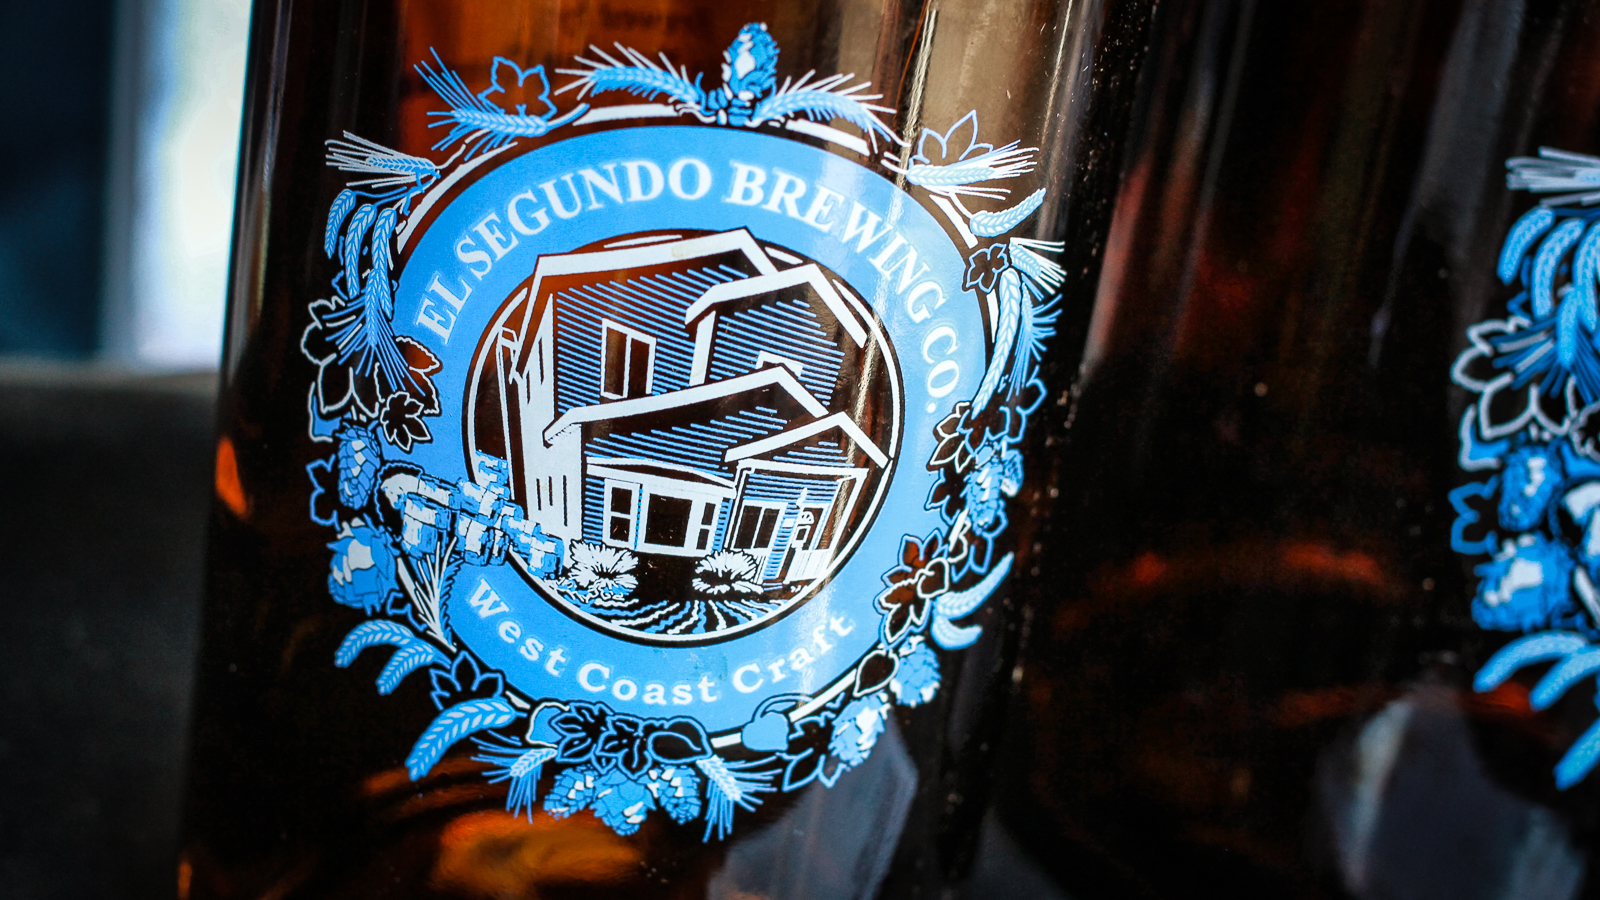 El Segundo Brewing Co.